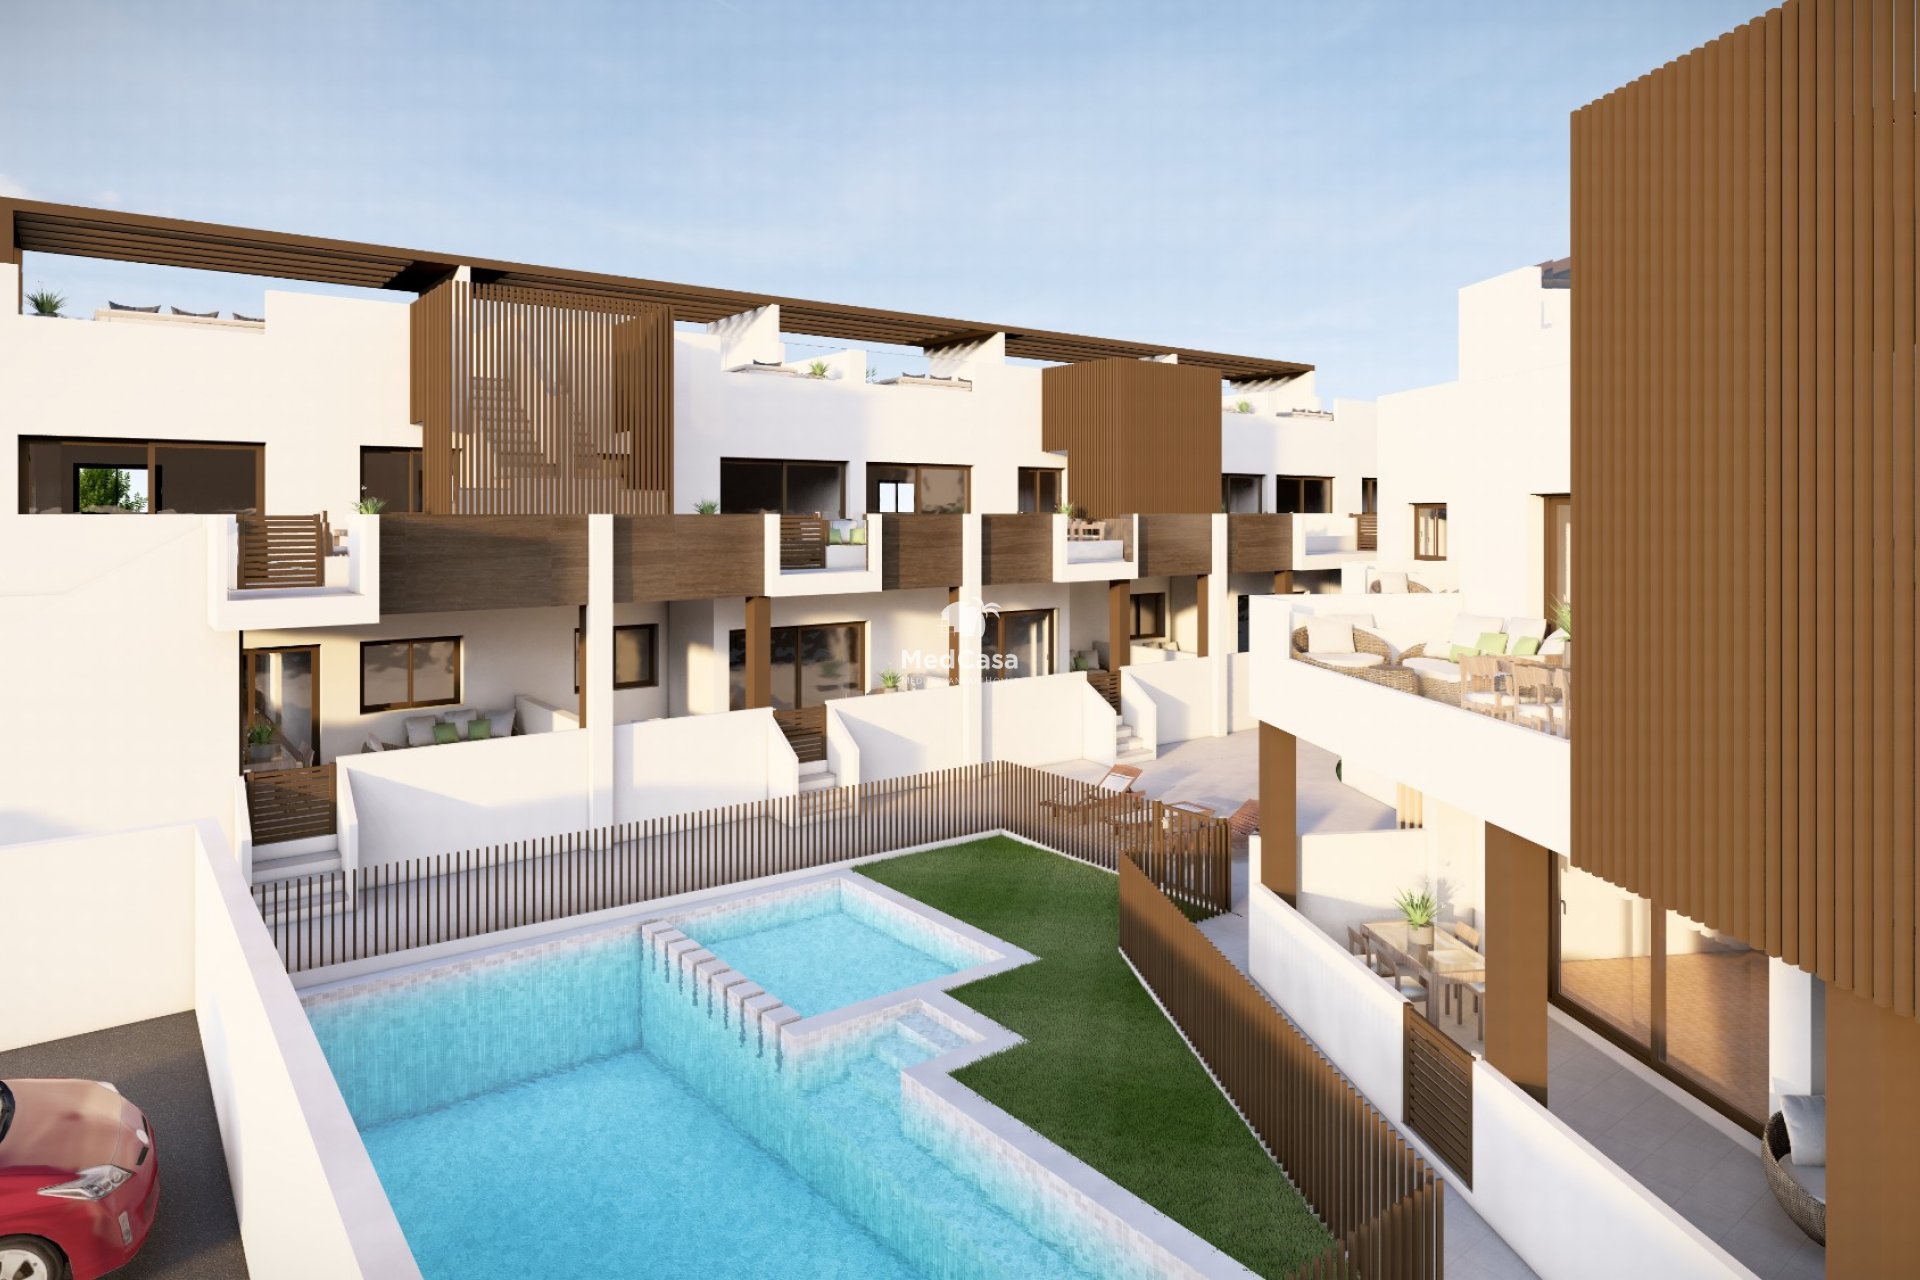 Pequeño complejo residencial tipo bungalow, amplias terrazas y piscina comunitaria